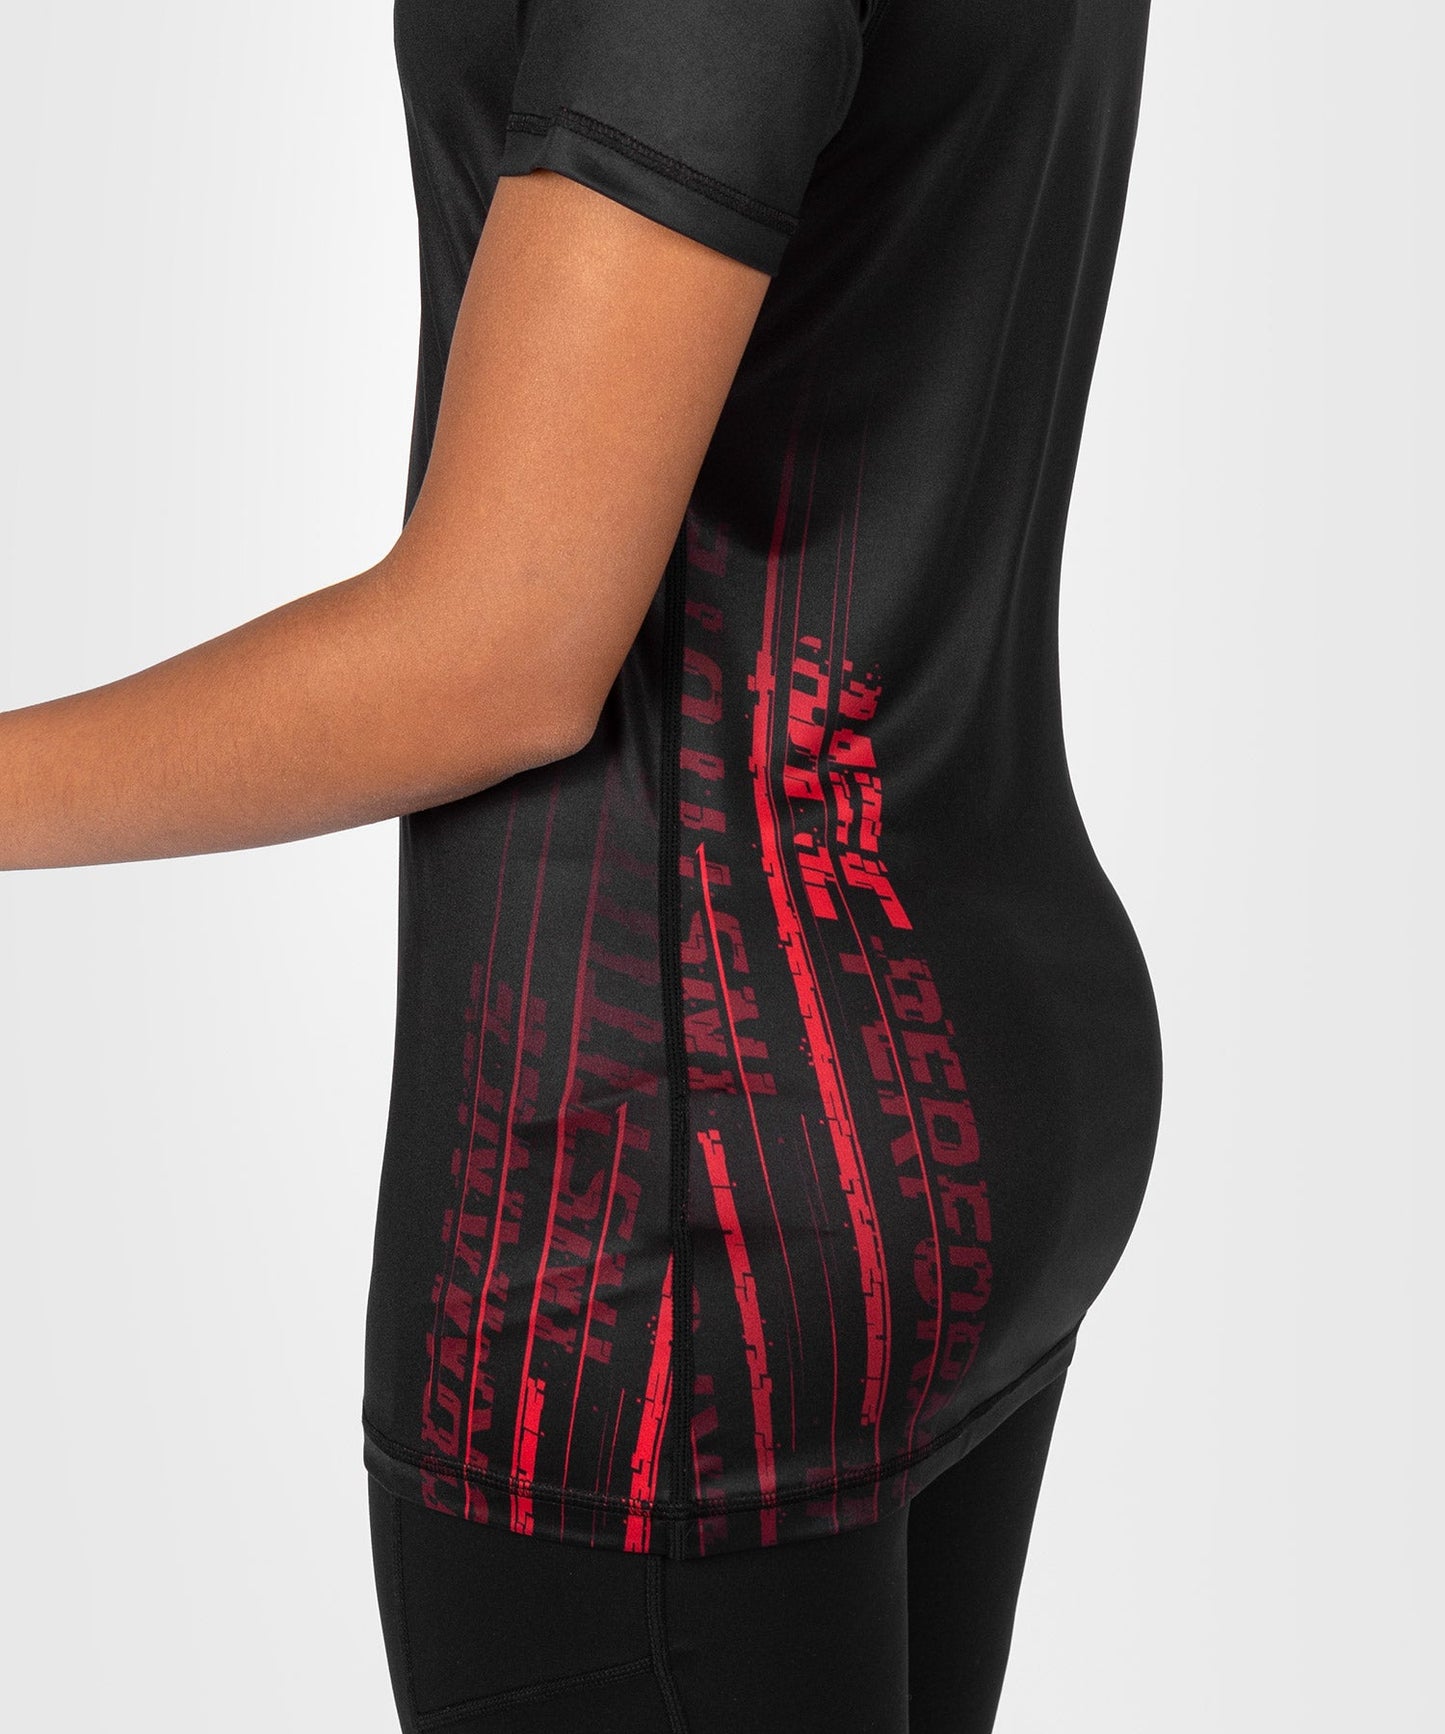 UFC Venum Performance Institute 2.0 Dry-Tech T-shirt für Frauen - Schwarz/Rot